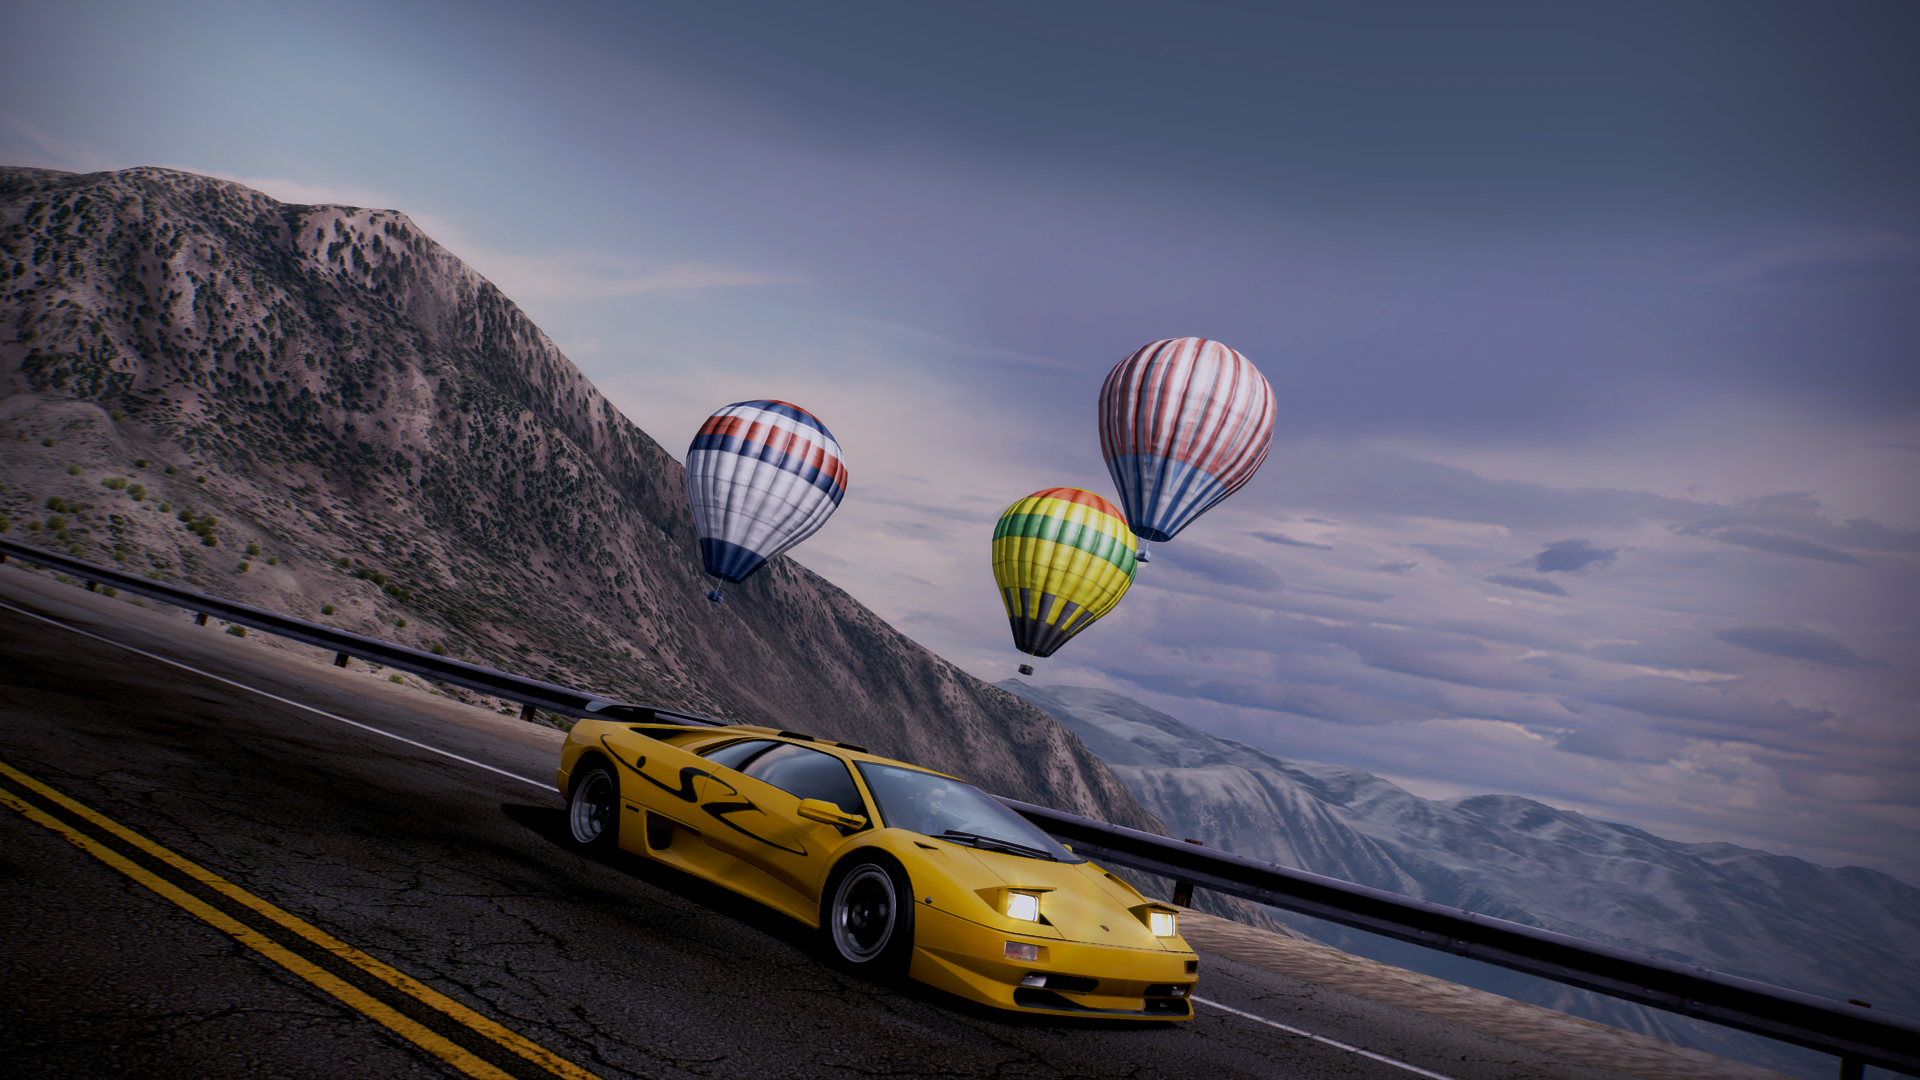 Need For Speed Hot Pursuit Lamborghini Diablo 1920x1080